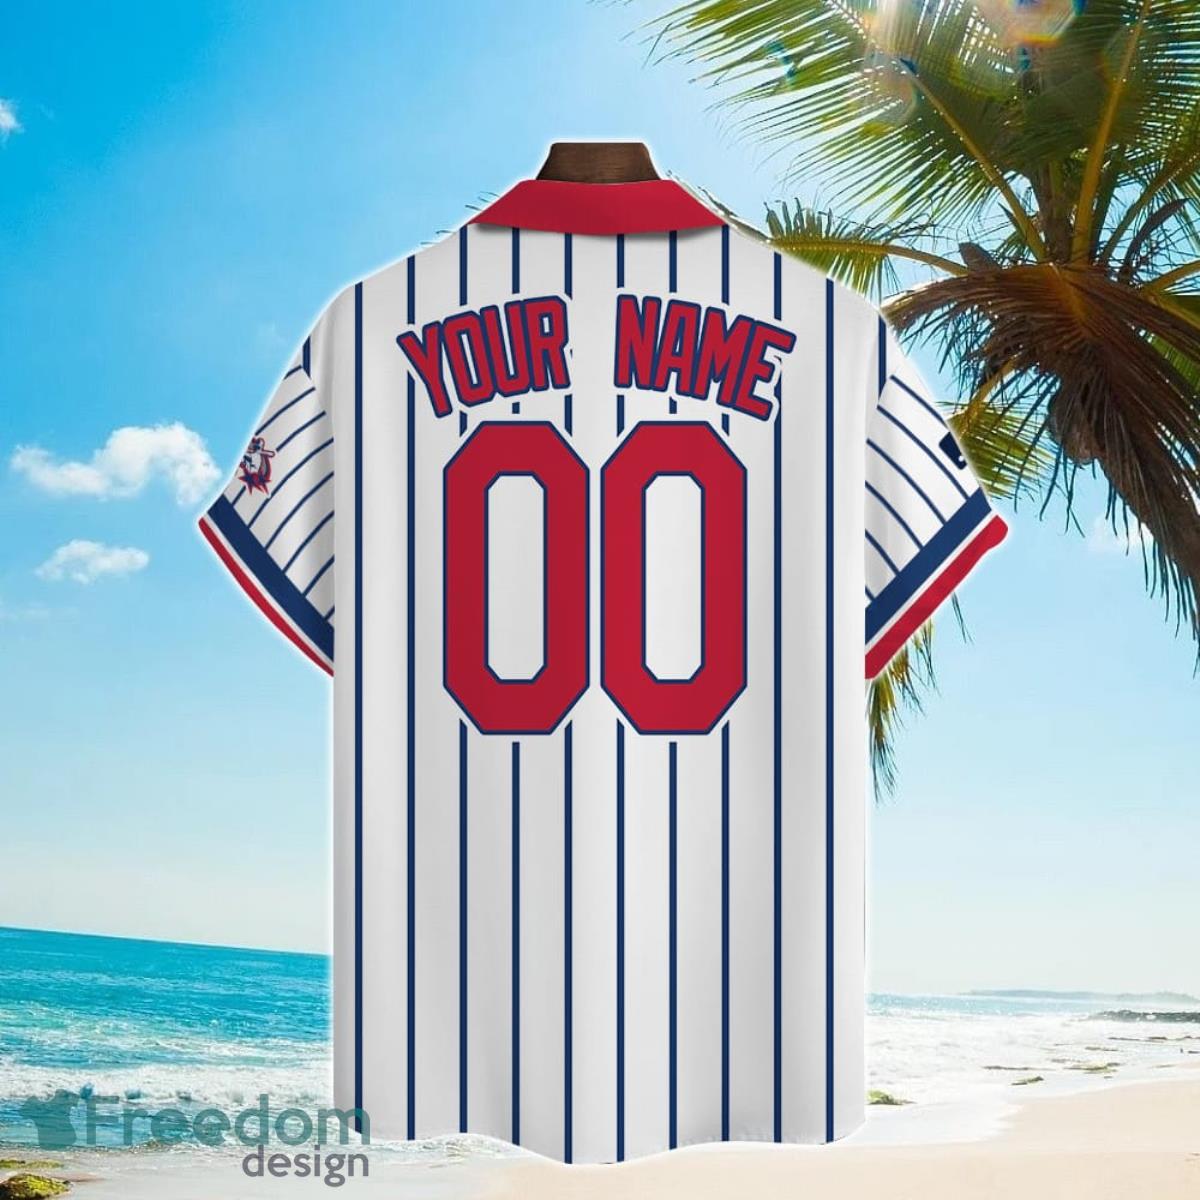 Philadelphia Phillies MLB Custom Name Hawaiian Shirt Trending For Men Women